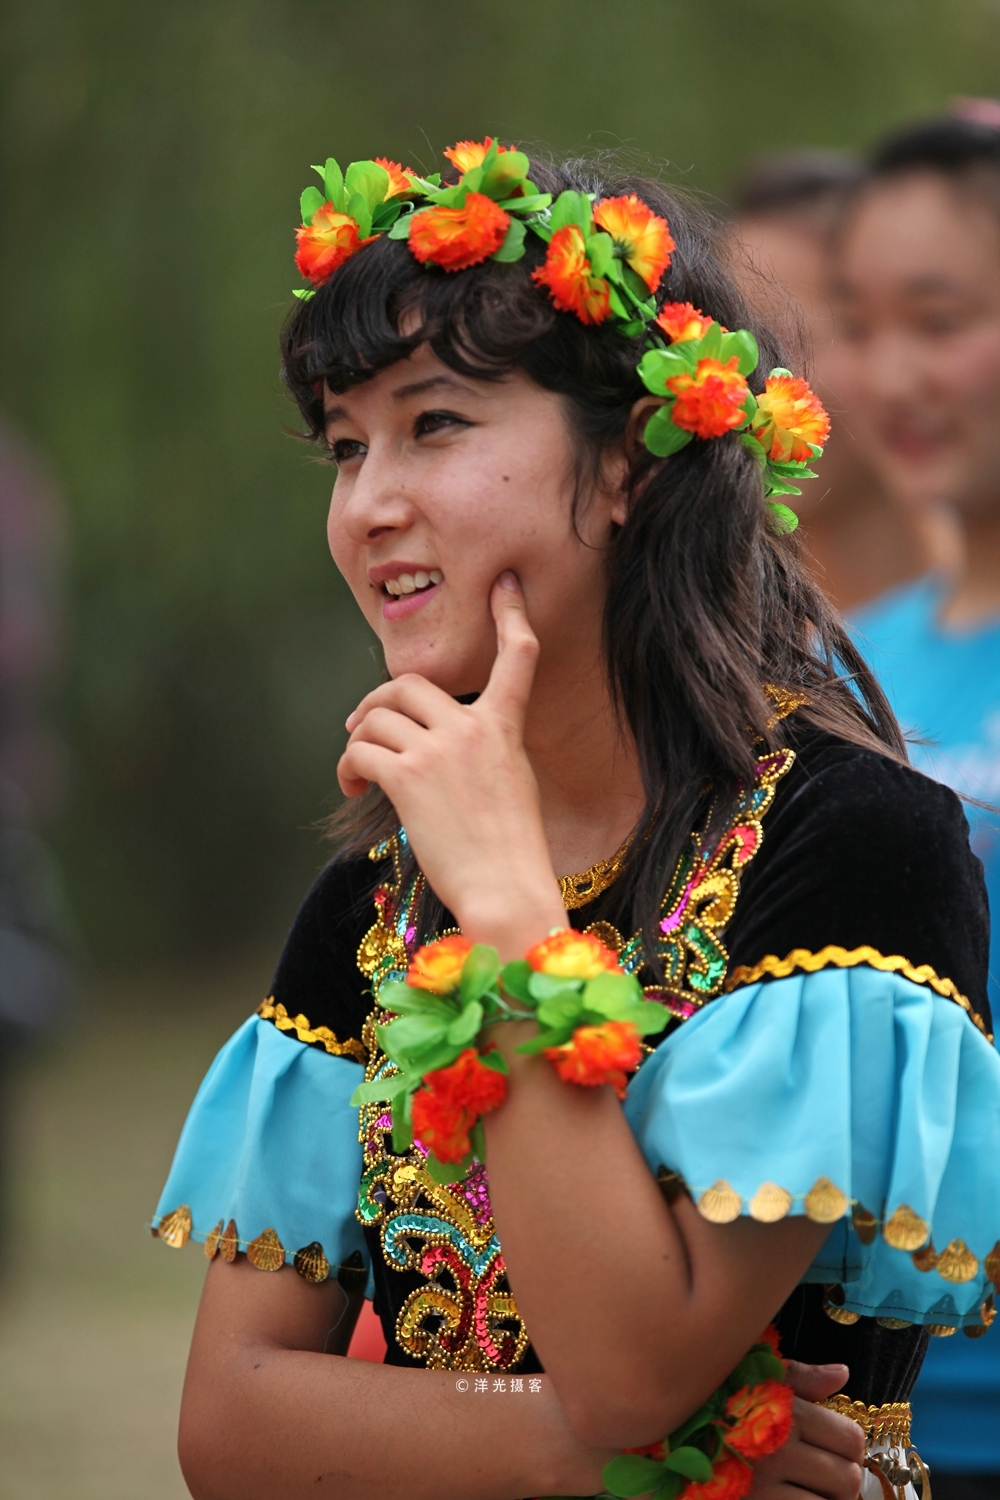 新疆小县城人口不到20万,由25个民族组成,街上女孩犹如联合国